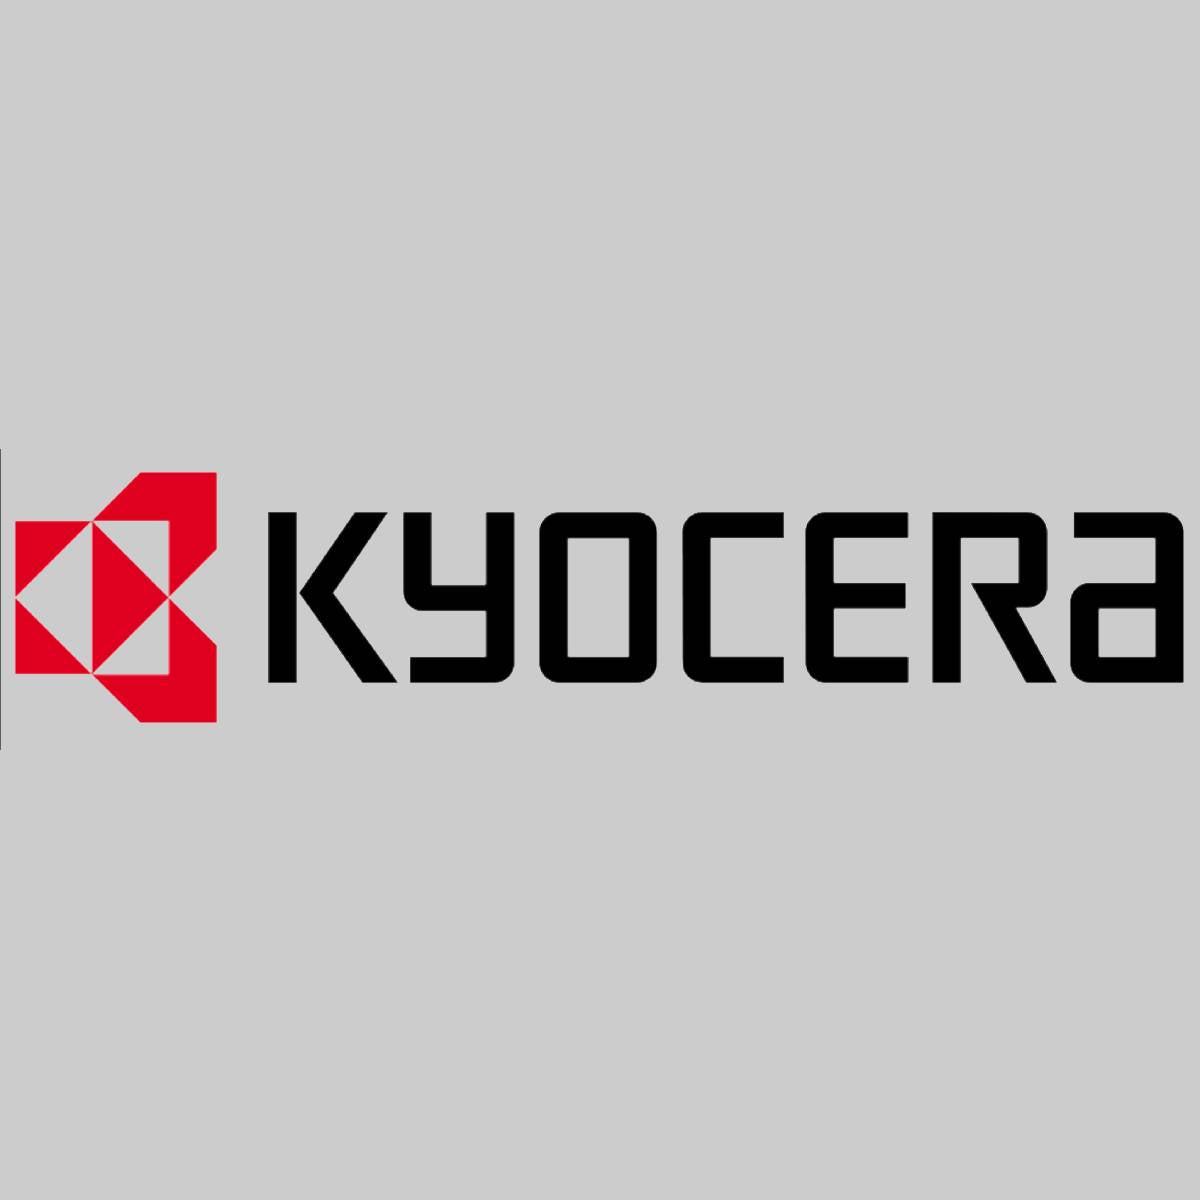 "Toner d'origine Kyocera TK-7300 Noir 1T02P70NL0 15 000 pages pour ECOSYS P 4040